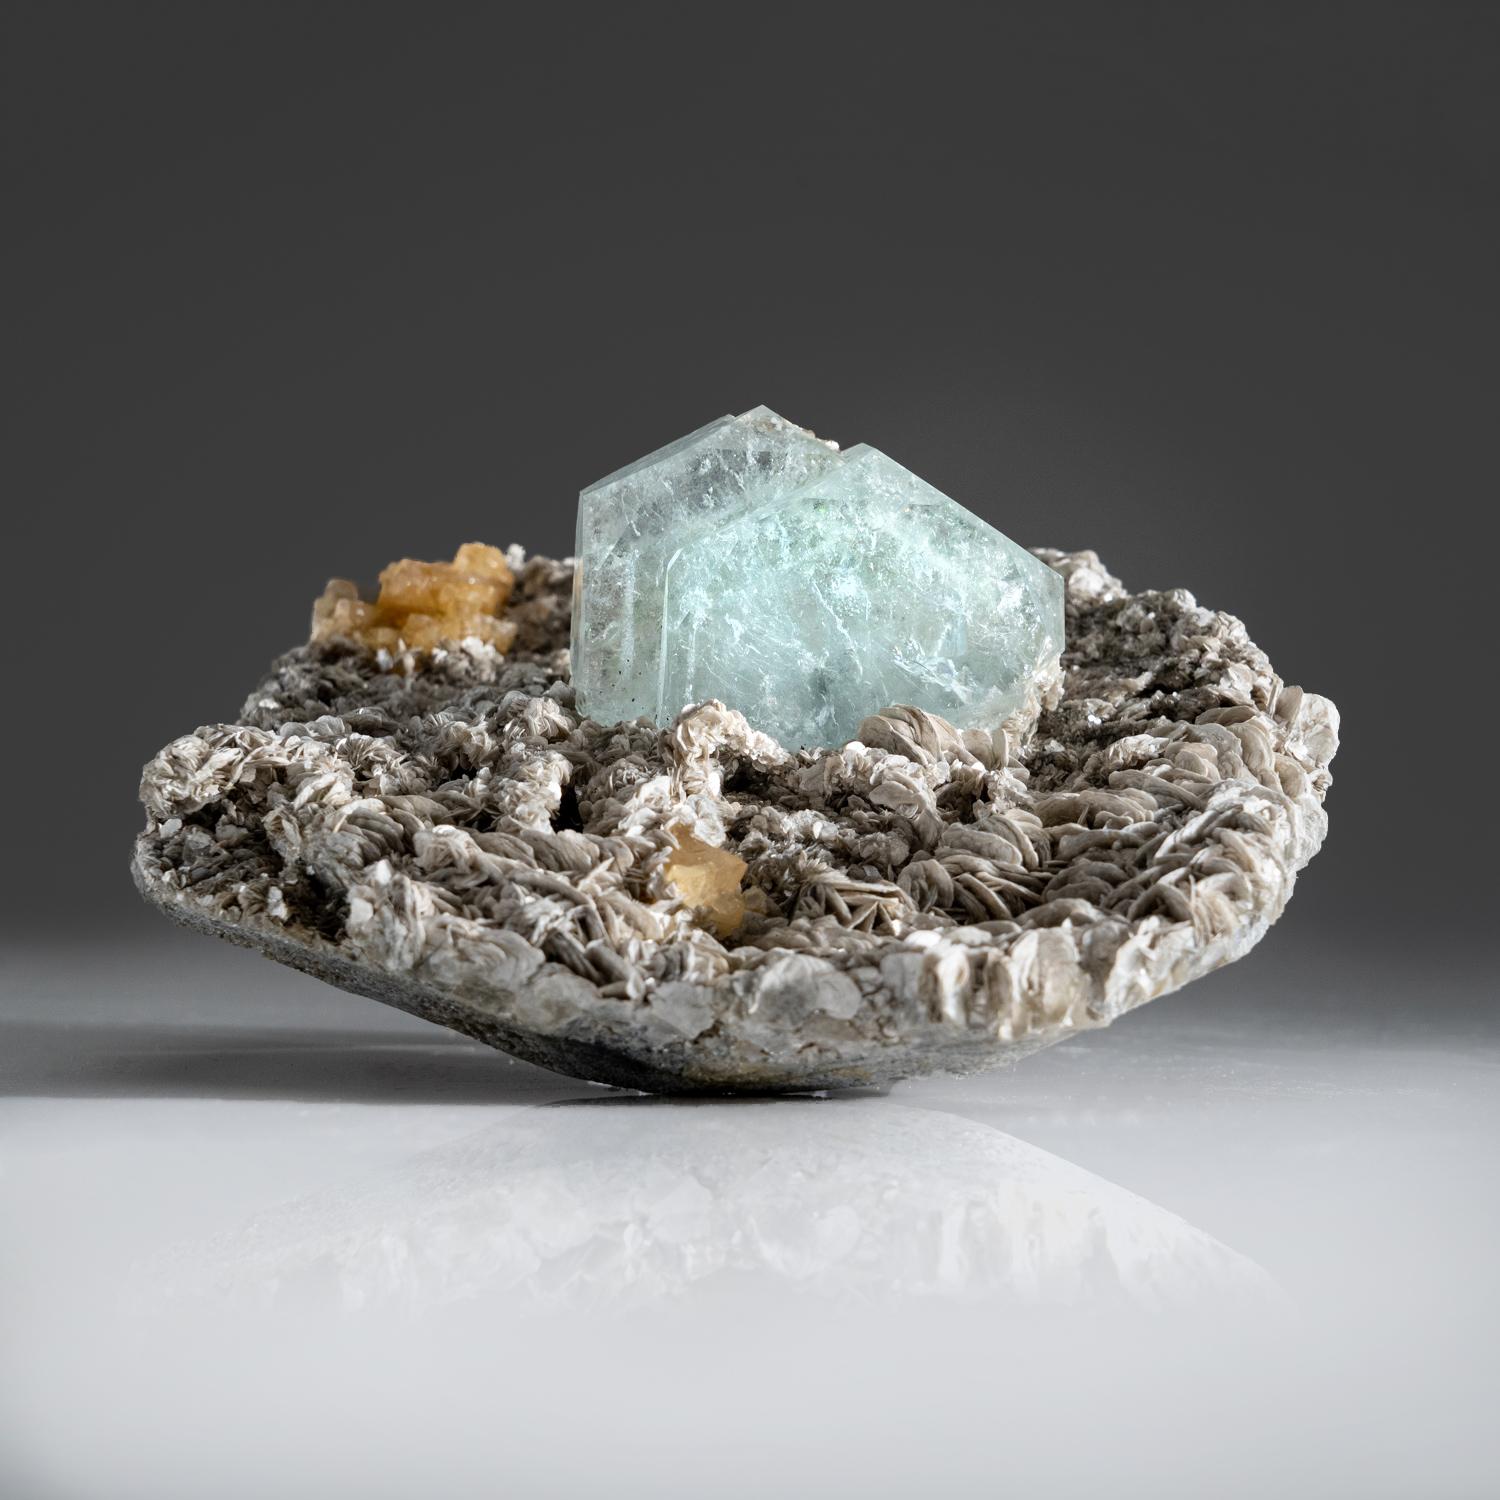 De Jebel Ouichane, Sagangane, Province de Nador, Région de l'Oriental, Maroc.

Voici une superbe et incroyable nouvelle barytine bleue qui a été découverte l'année dernière. Cristal de barytine gris-bleu transparent et lustré de 2.5x1.5